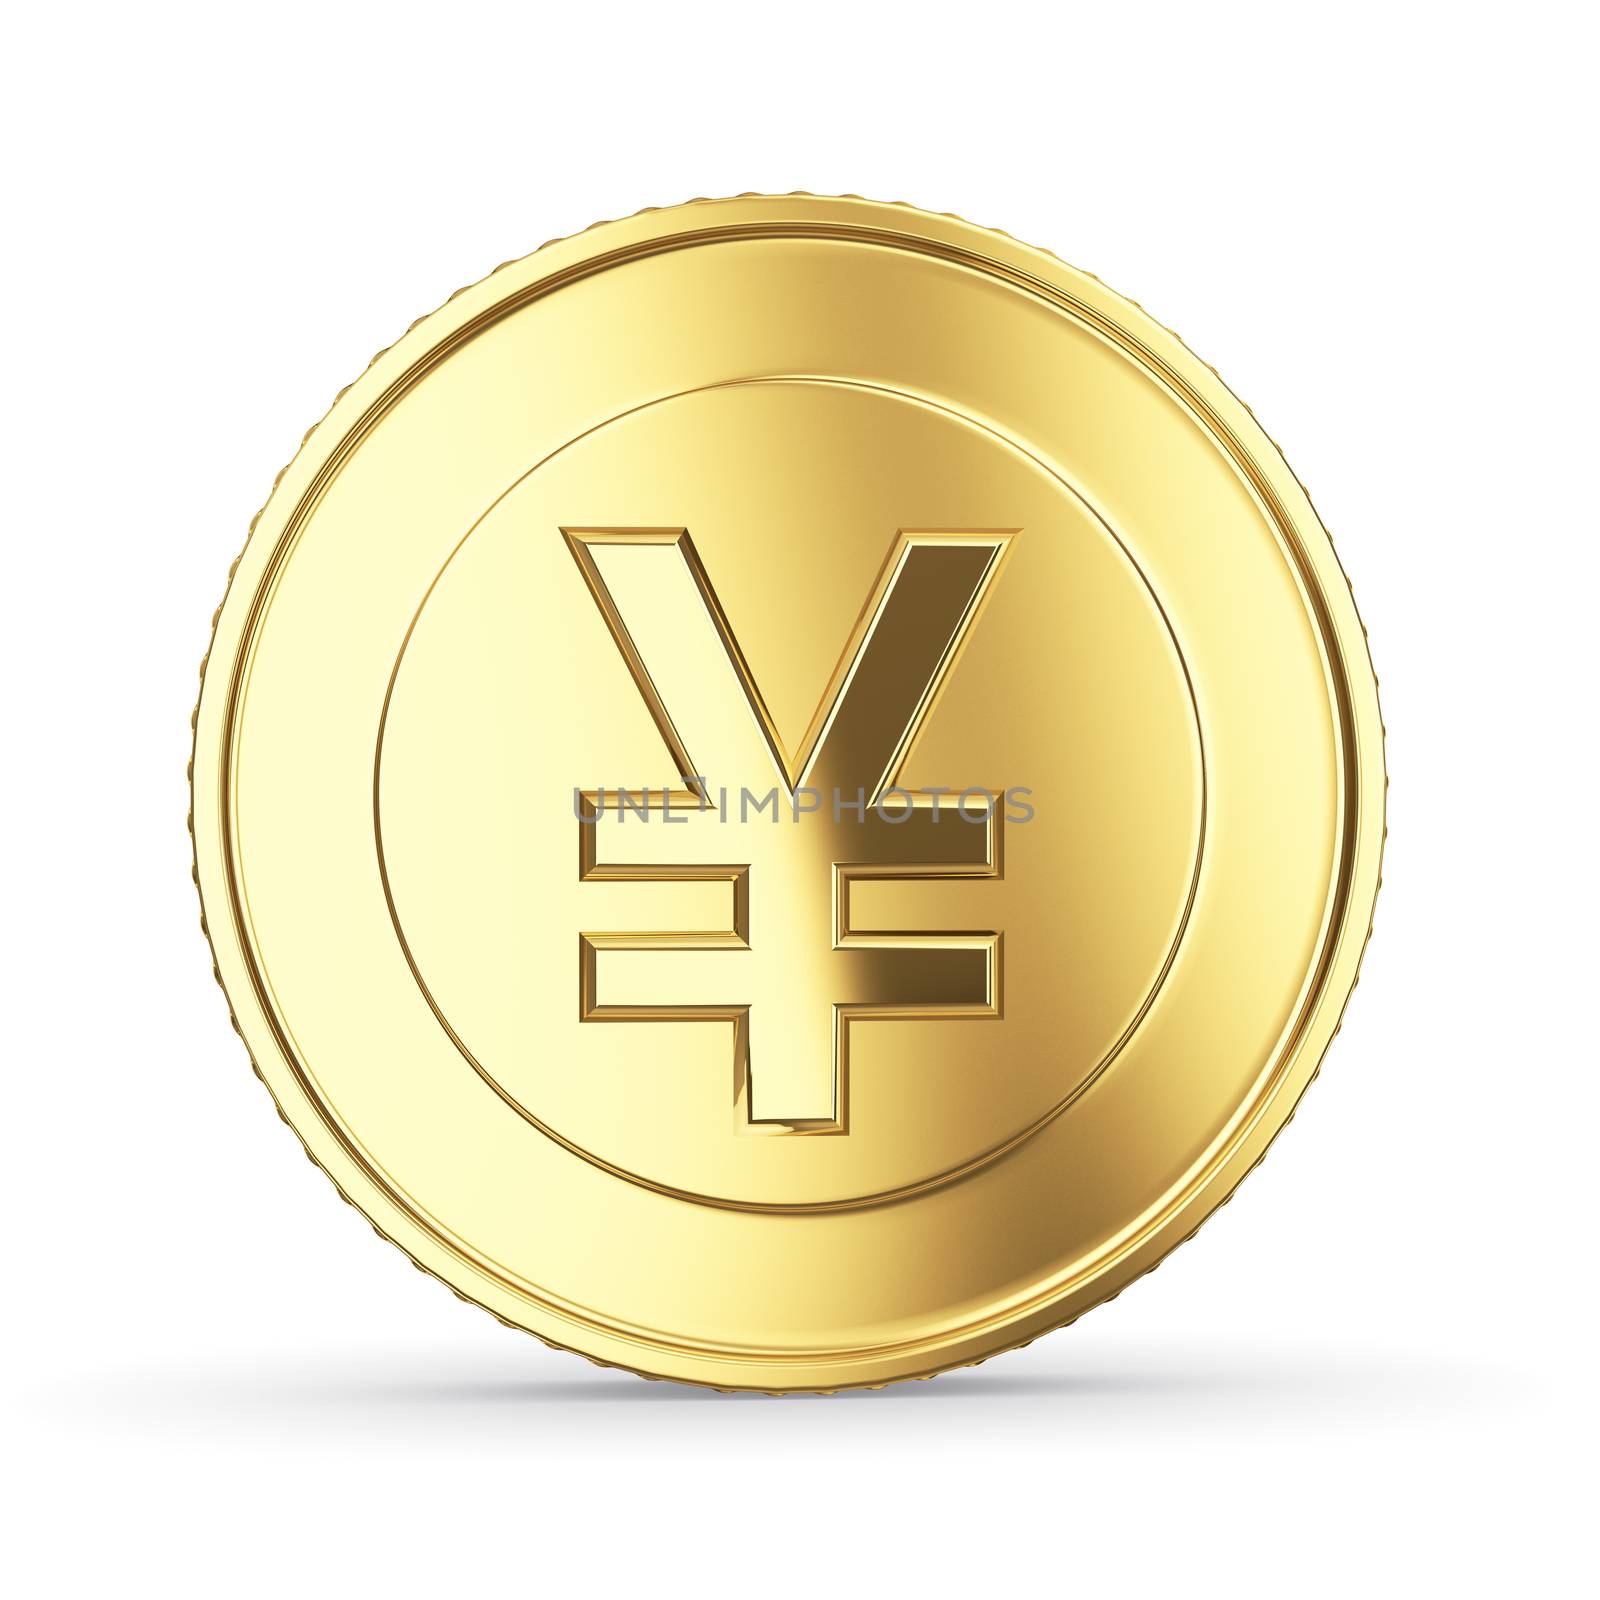 Golden yen coin by 123dartist